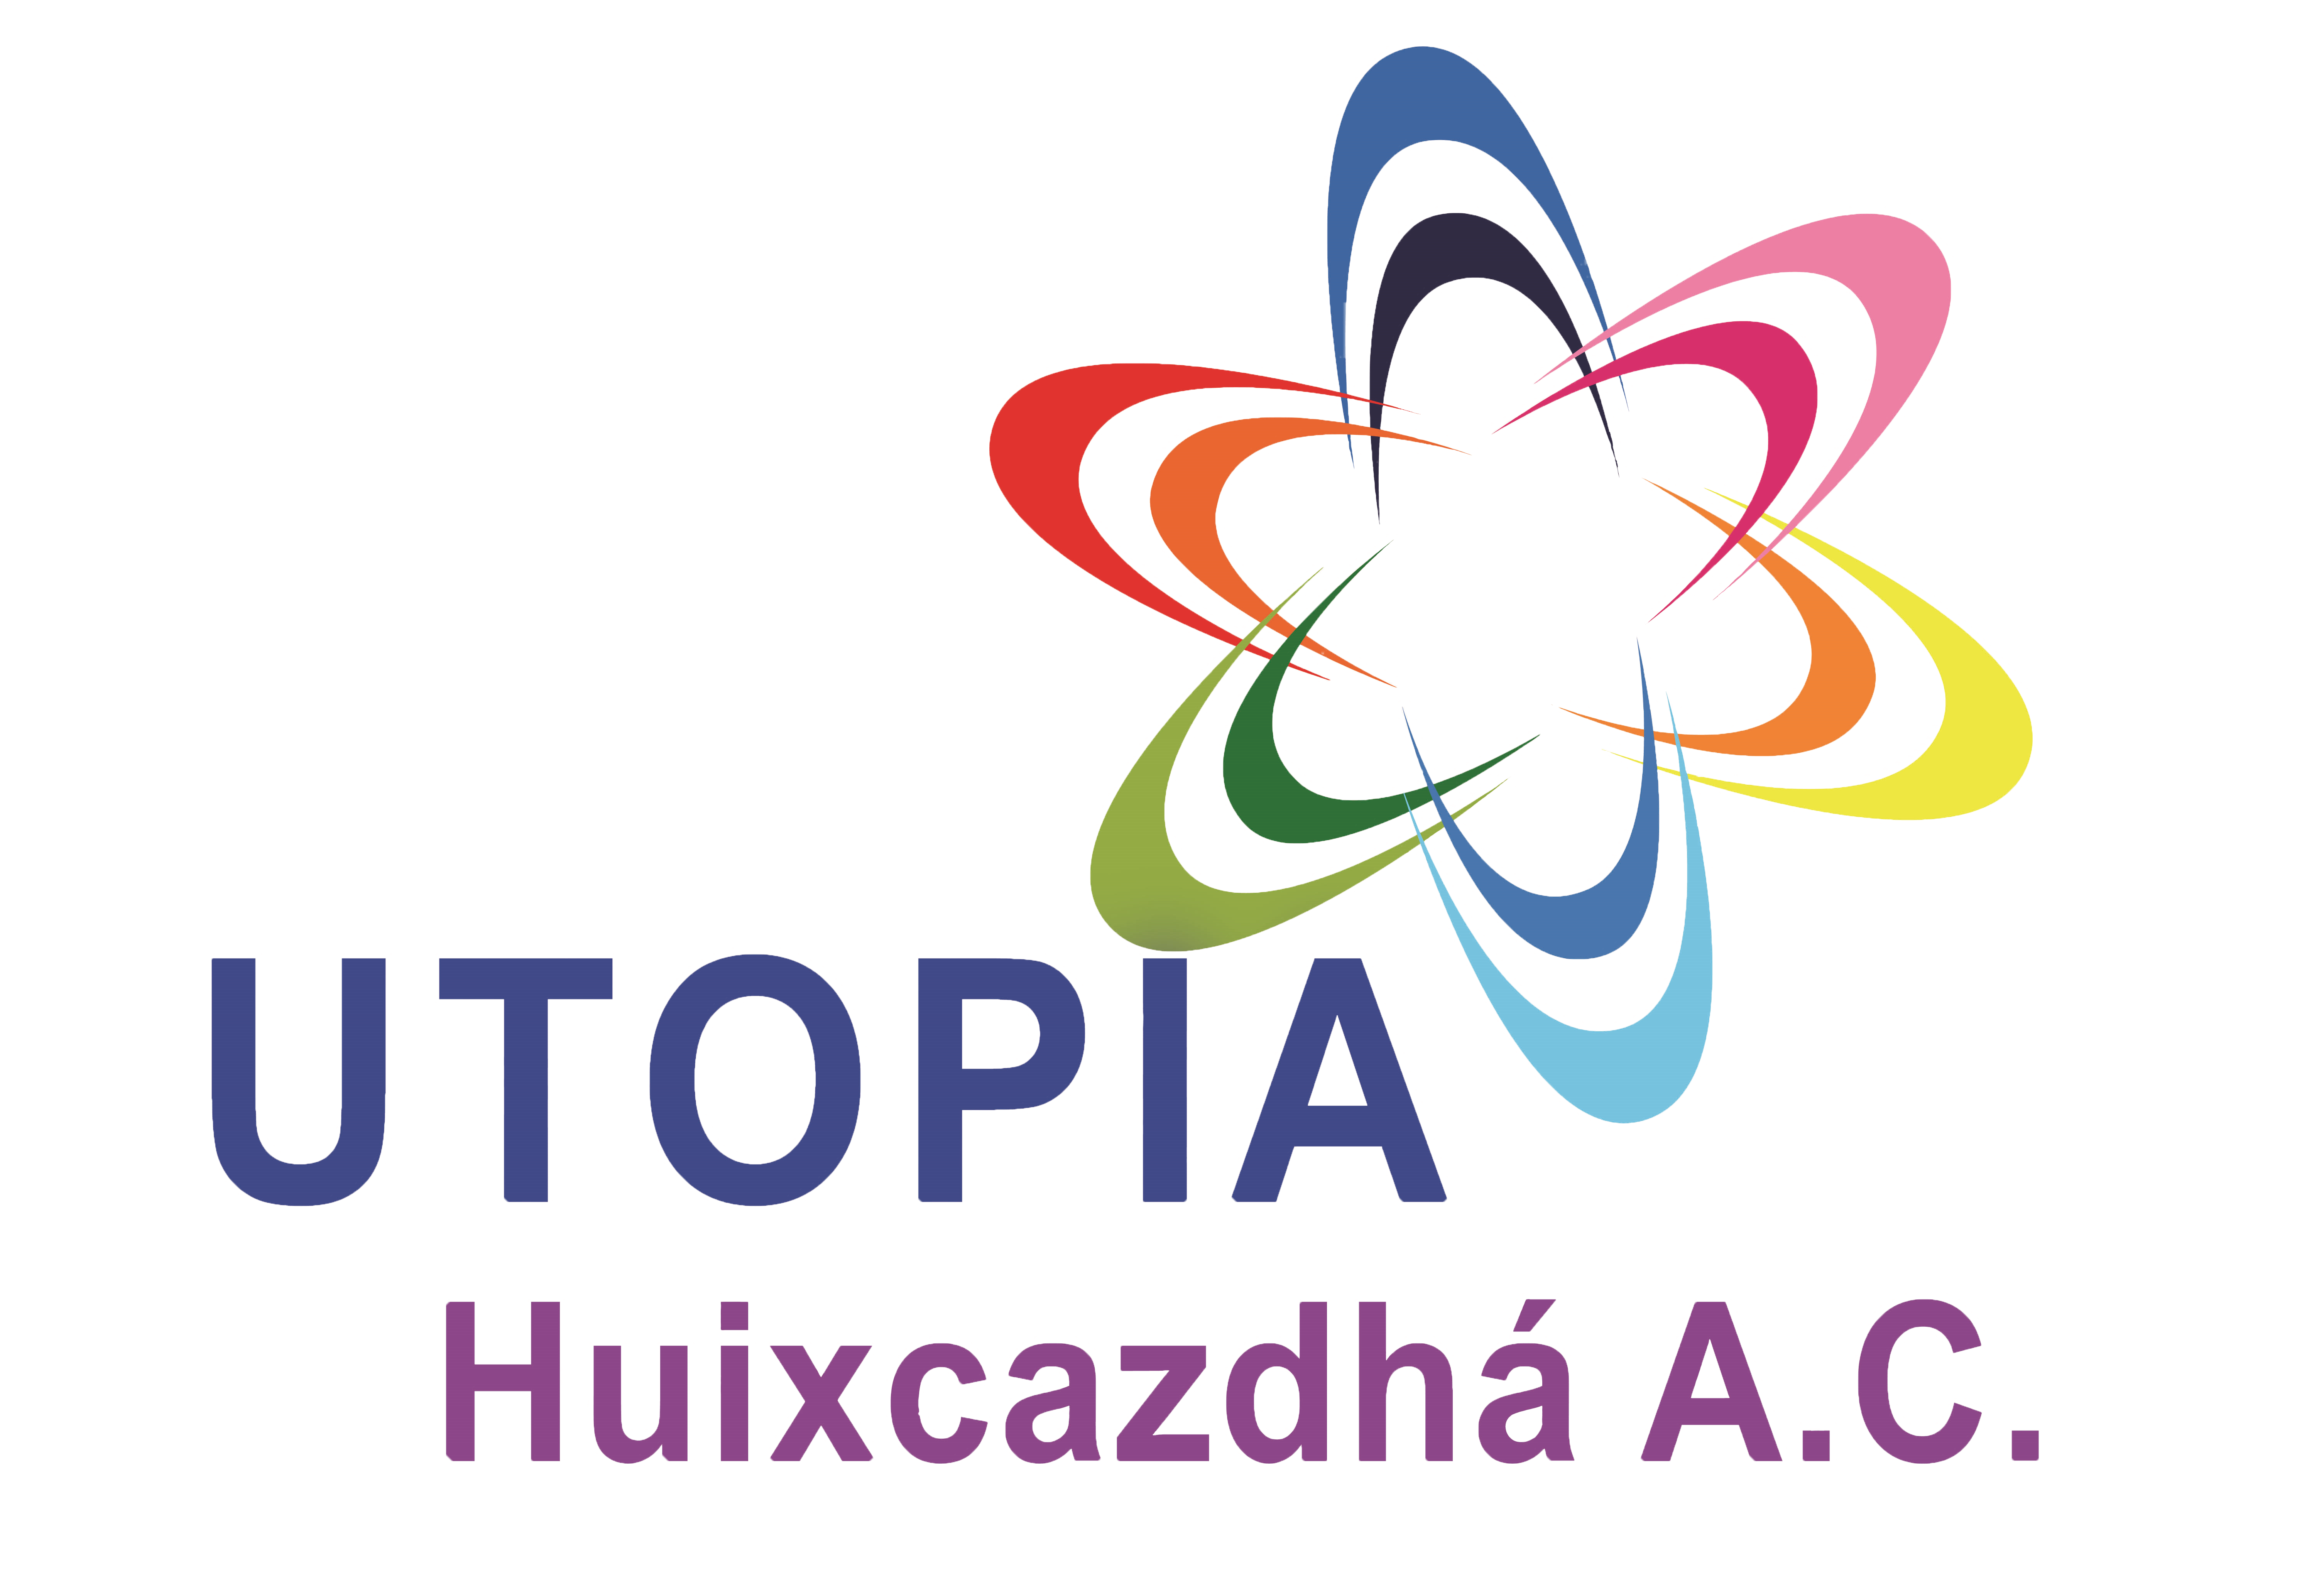 Utopía Huixcazdhá